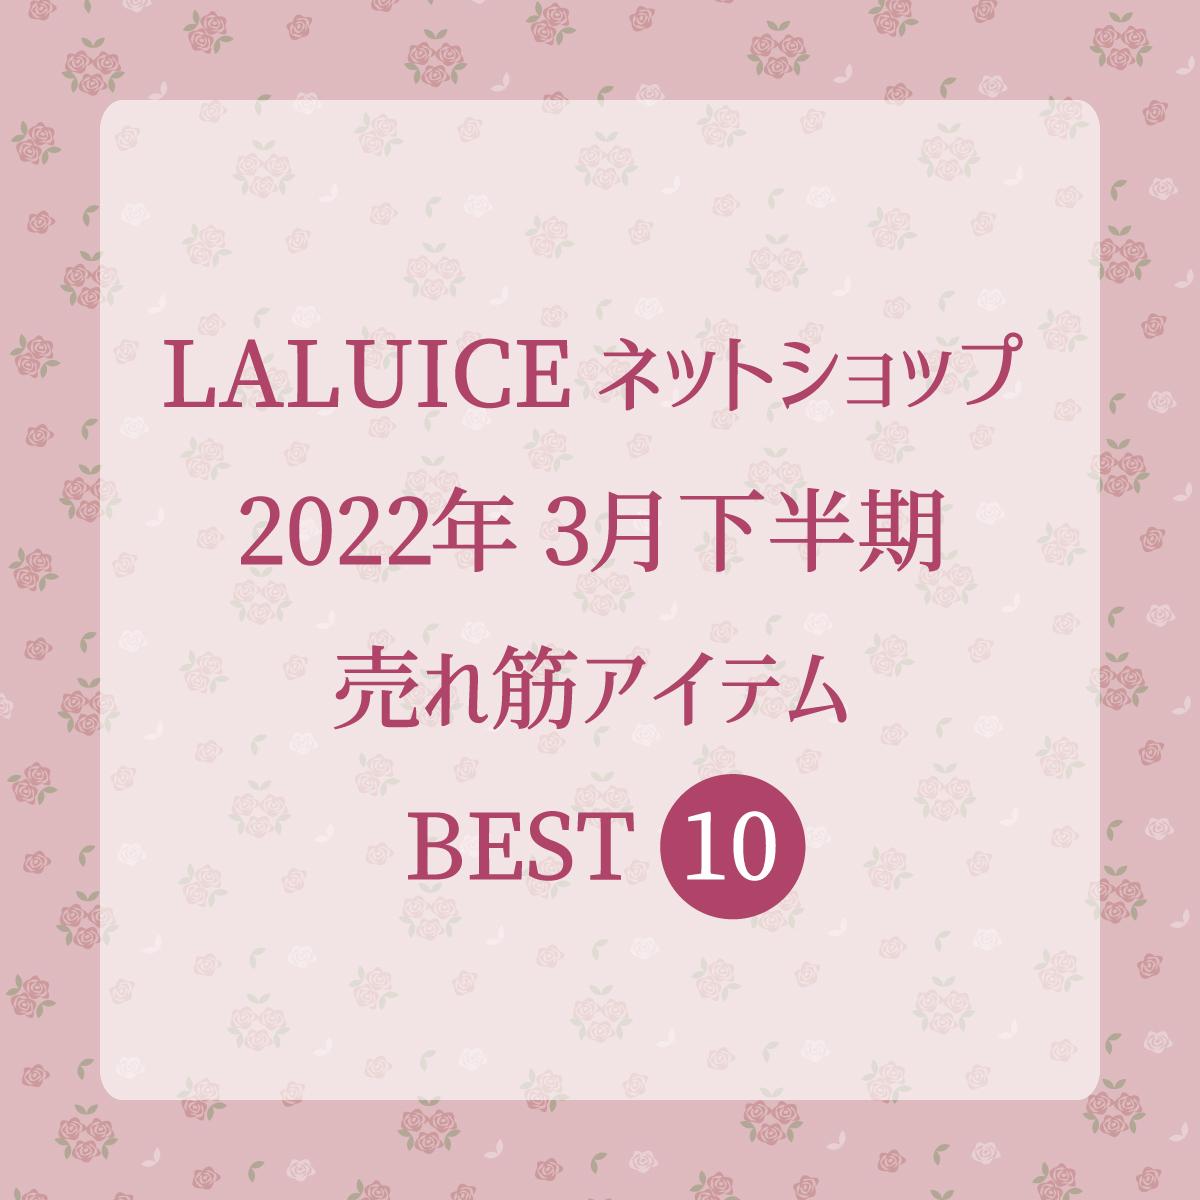 2022年3月下半期(3/16～3/31) LALUICEネットショップ売れ筋アイテム BEST10